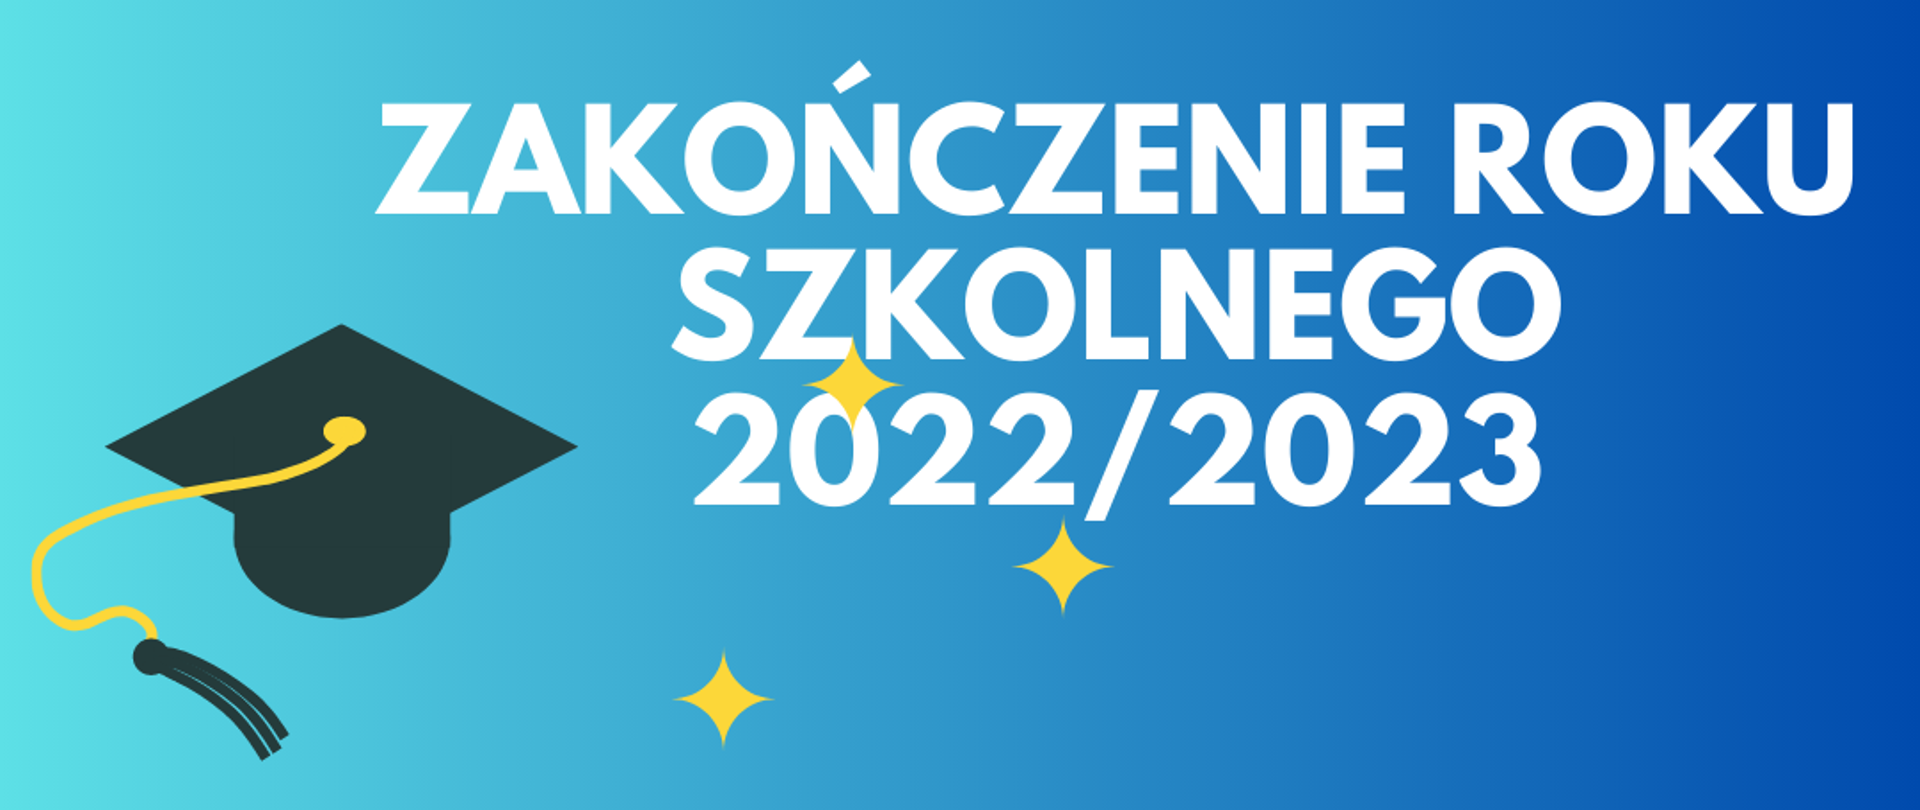 Plakat na niebieskim tle po lewej stronie czarny biret; pośrodku napis Zakończenie Roku Szkolnego 2022/2023.